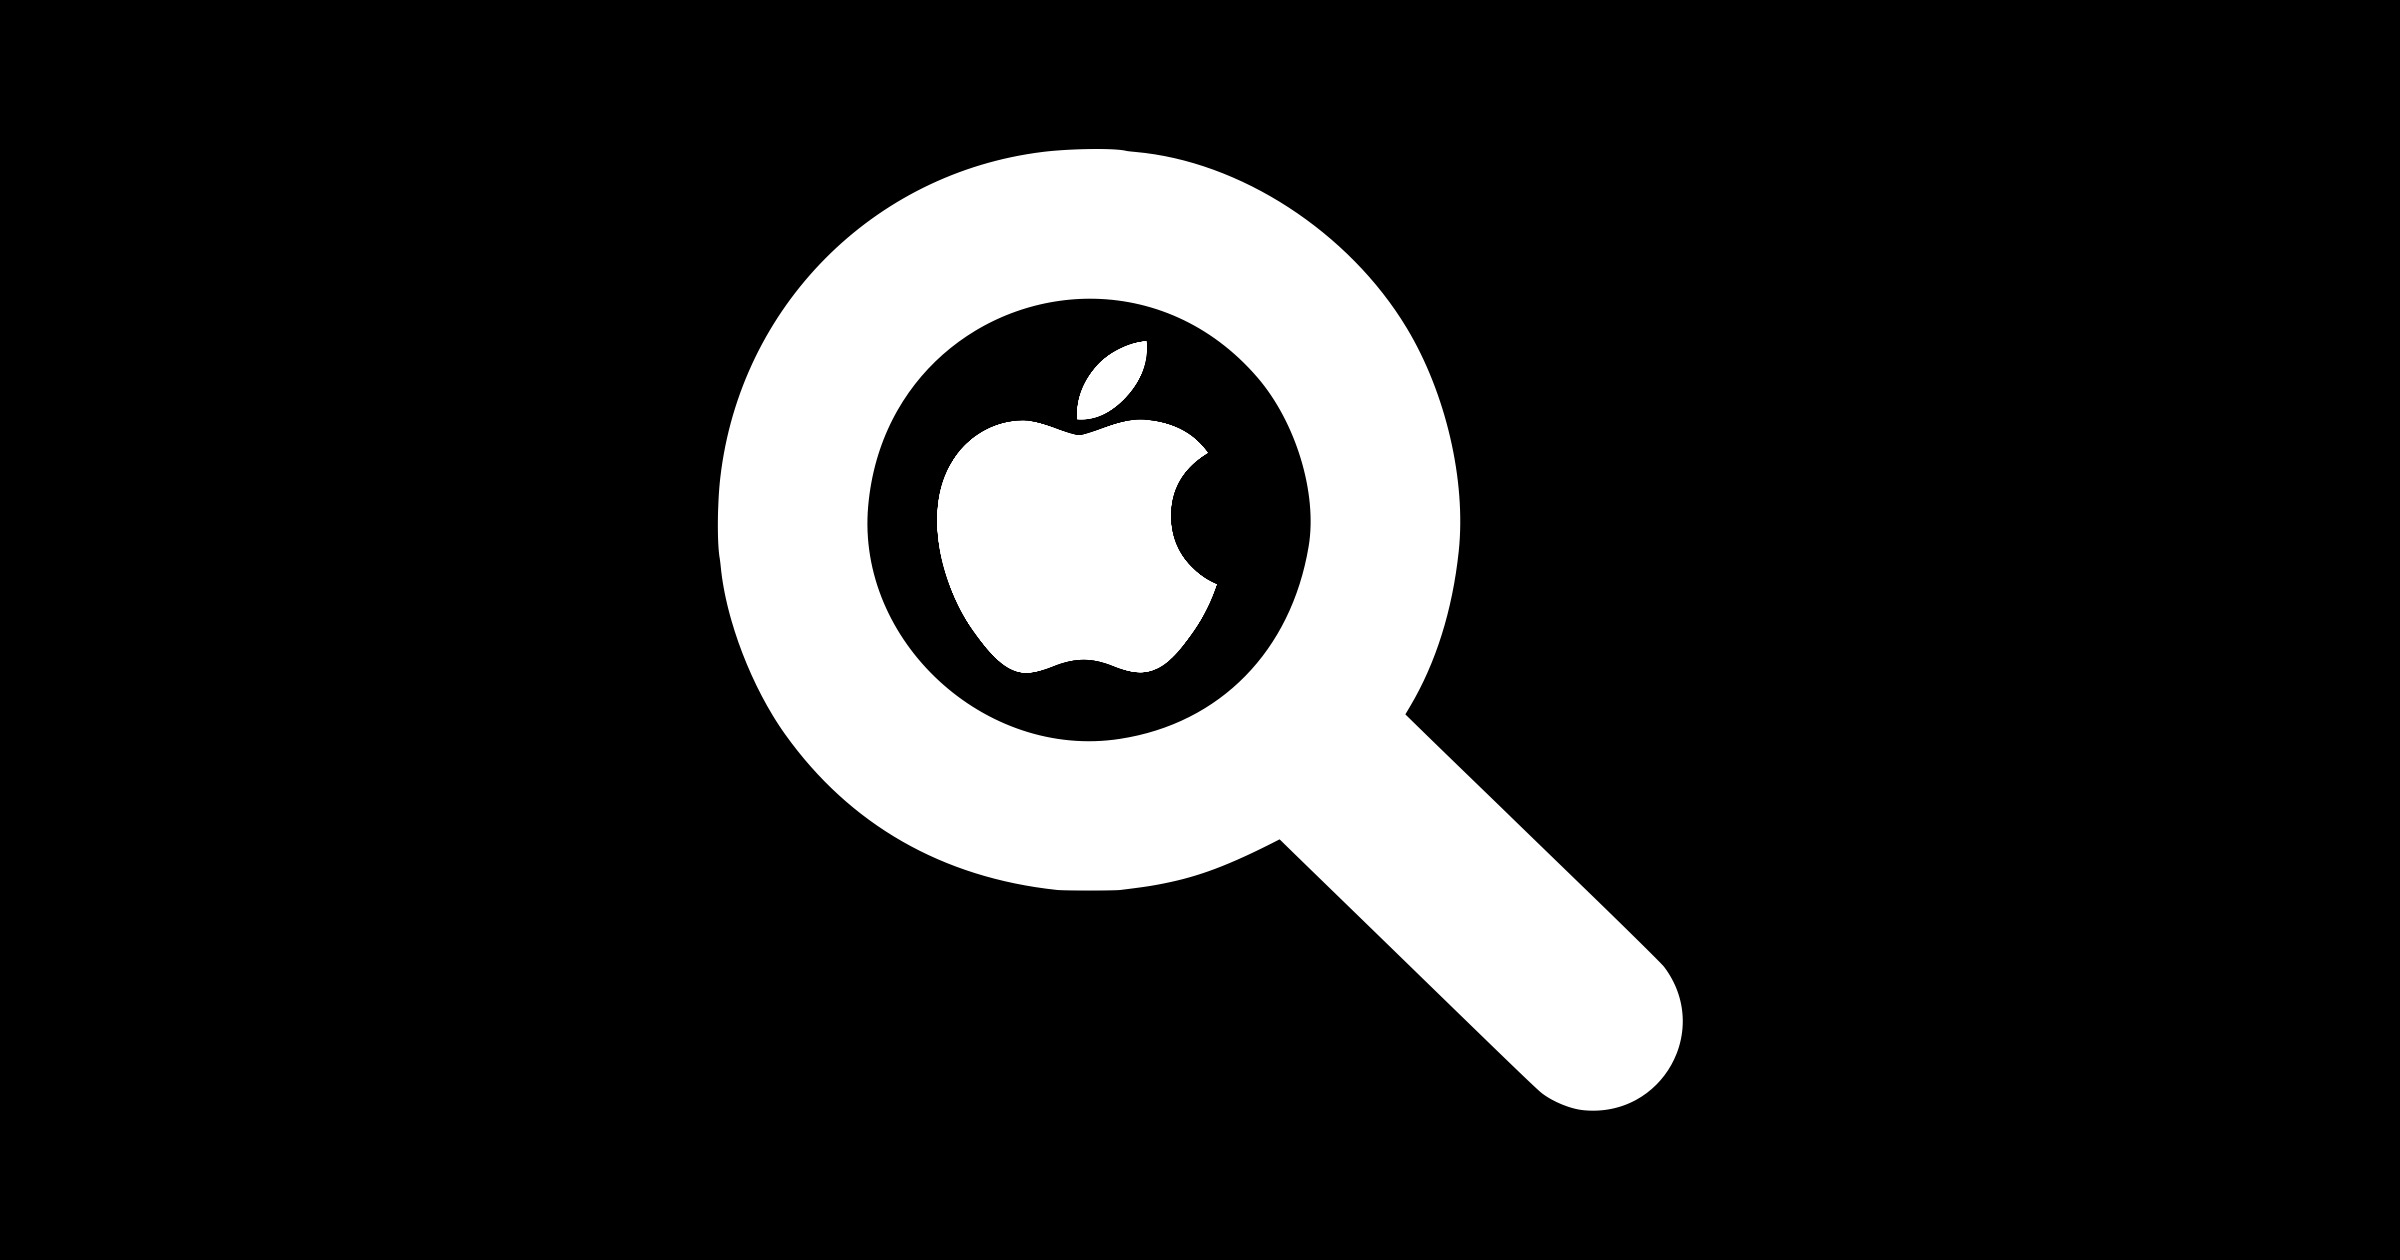 ¿Veremos un motor de búsqueda de Apple en el futuro?